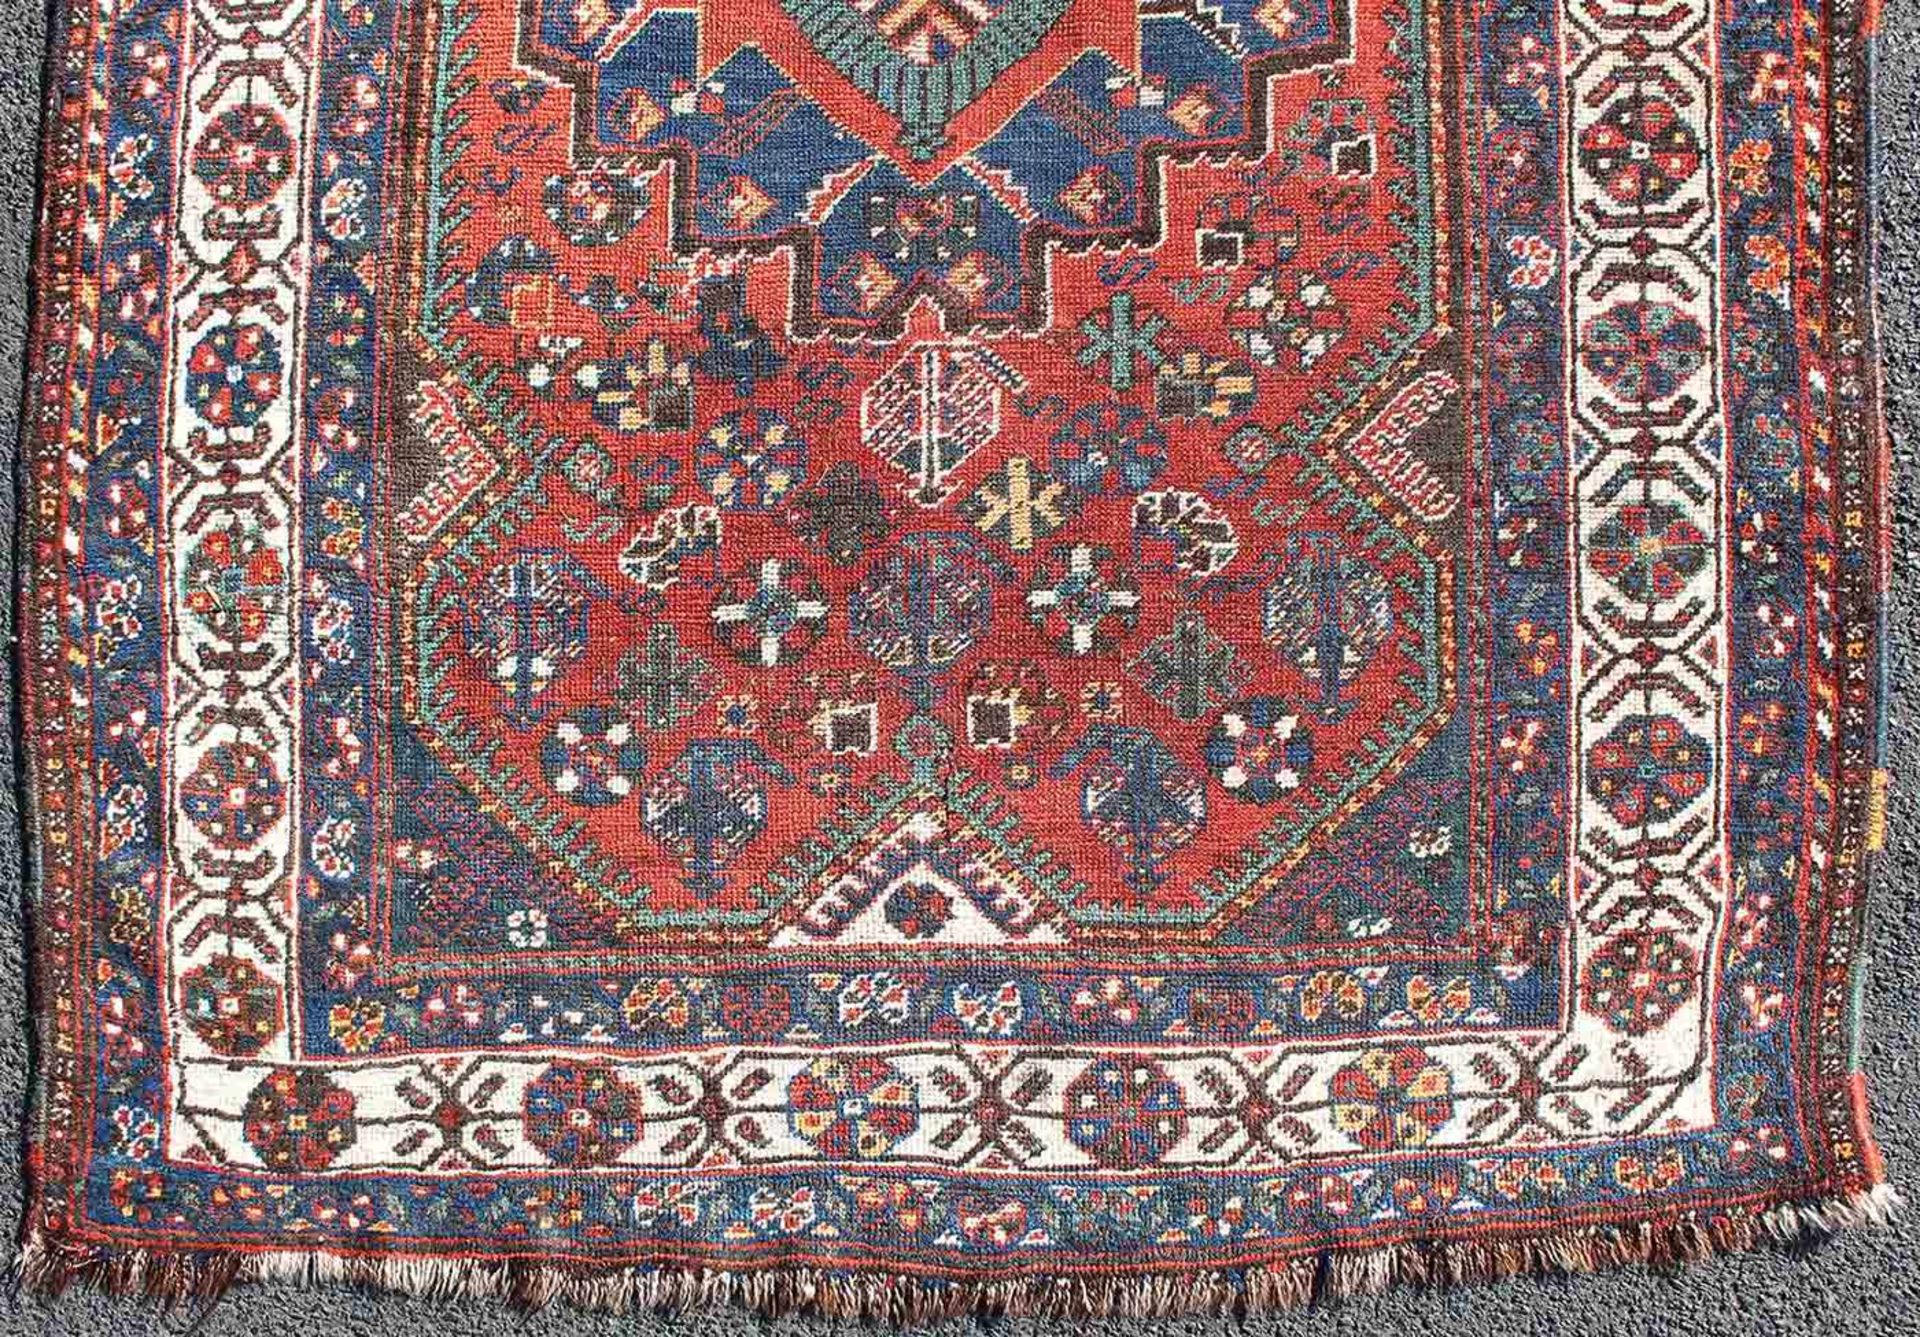 Schiraz Perserteppich. Iran. Antik, um 1920.153 cm x 110 cm. Handgeknüpft. Wolle auf Wolle. - Image 2 of 6